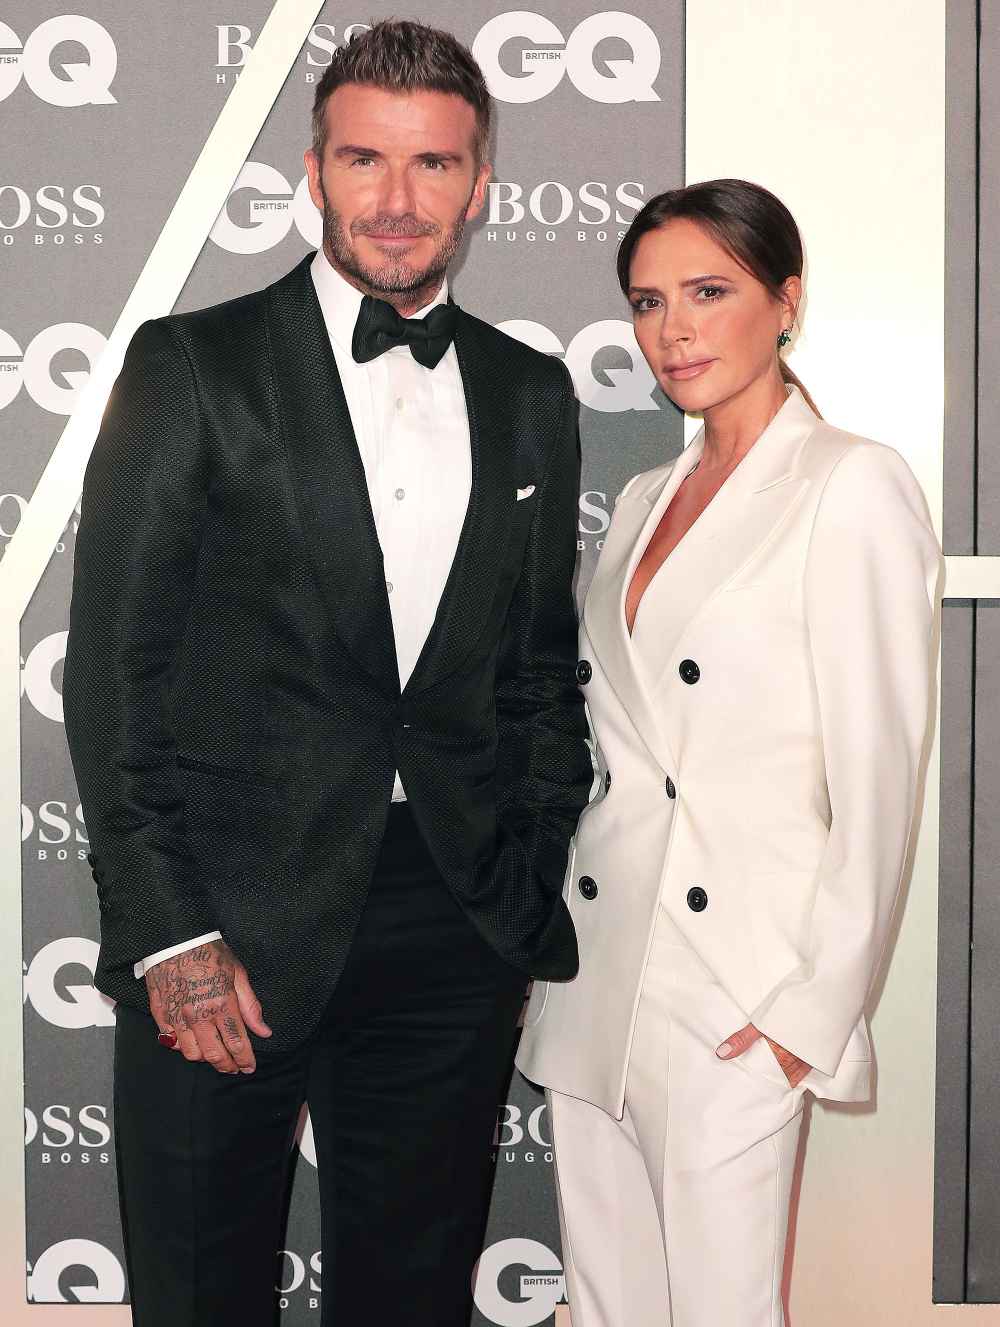 David Beckham Stills Has Train Ticket That Victoria Beckham Gave Him With Her Phone Number